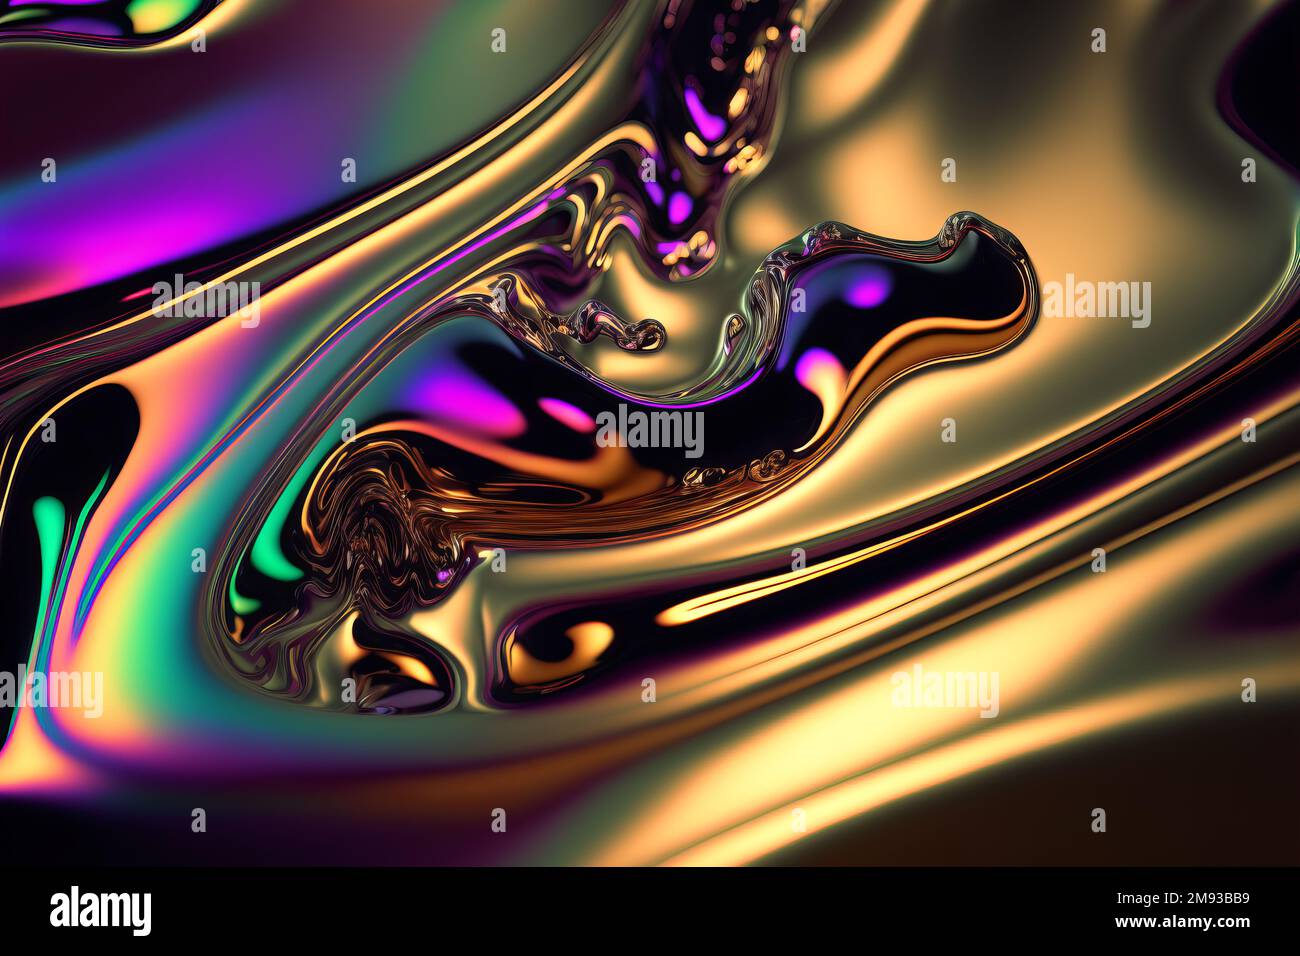 Abstract psychodelic background. Iridescent colors ultraviolet neon metallic liquid Stock Photo